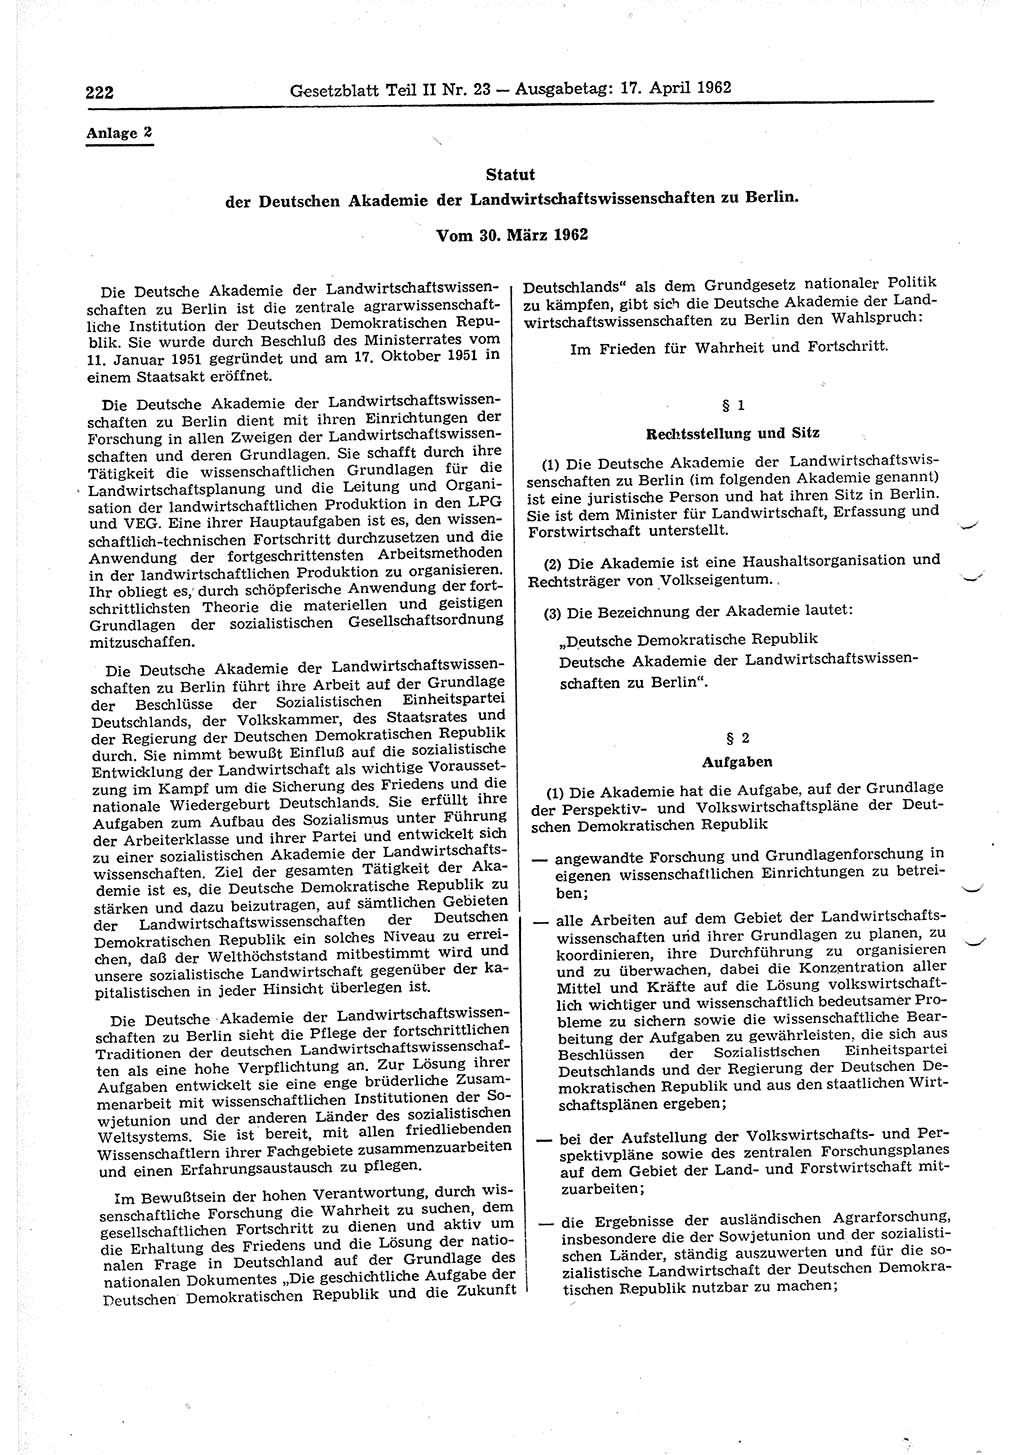 Gesetzblatt (GBl.) der Deutschen Demokratischen Republik (DDR) Teil ⅠⅠ 1962, Seite 222 (GBl. DDR ⅠⅠ 1962, S. 222)